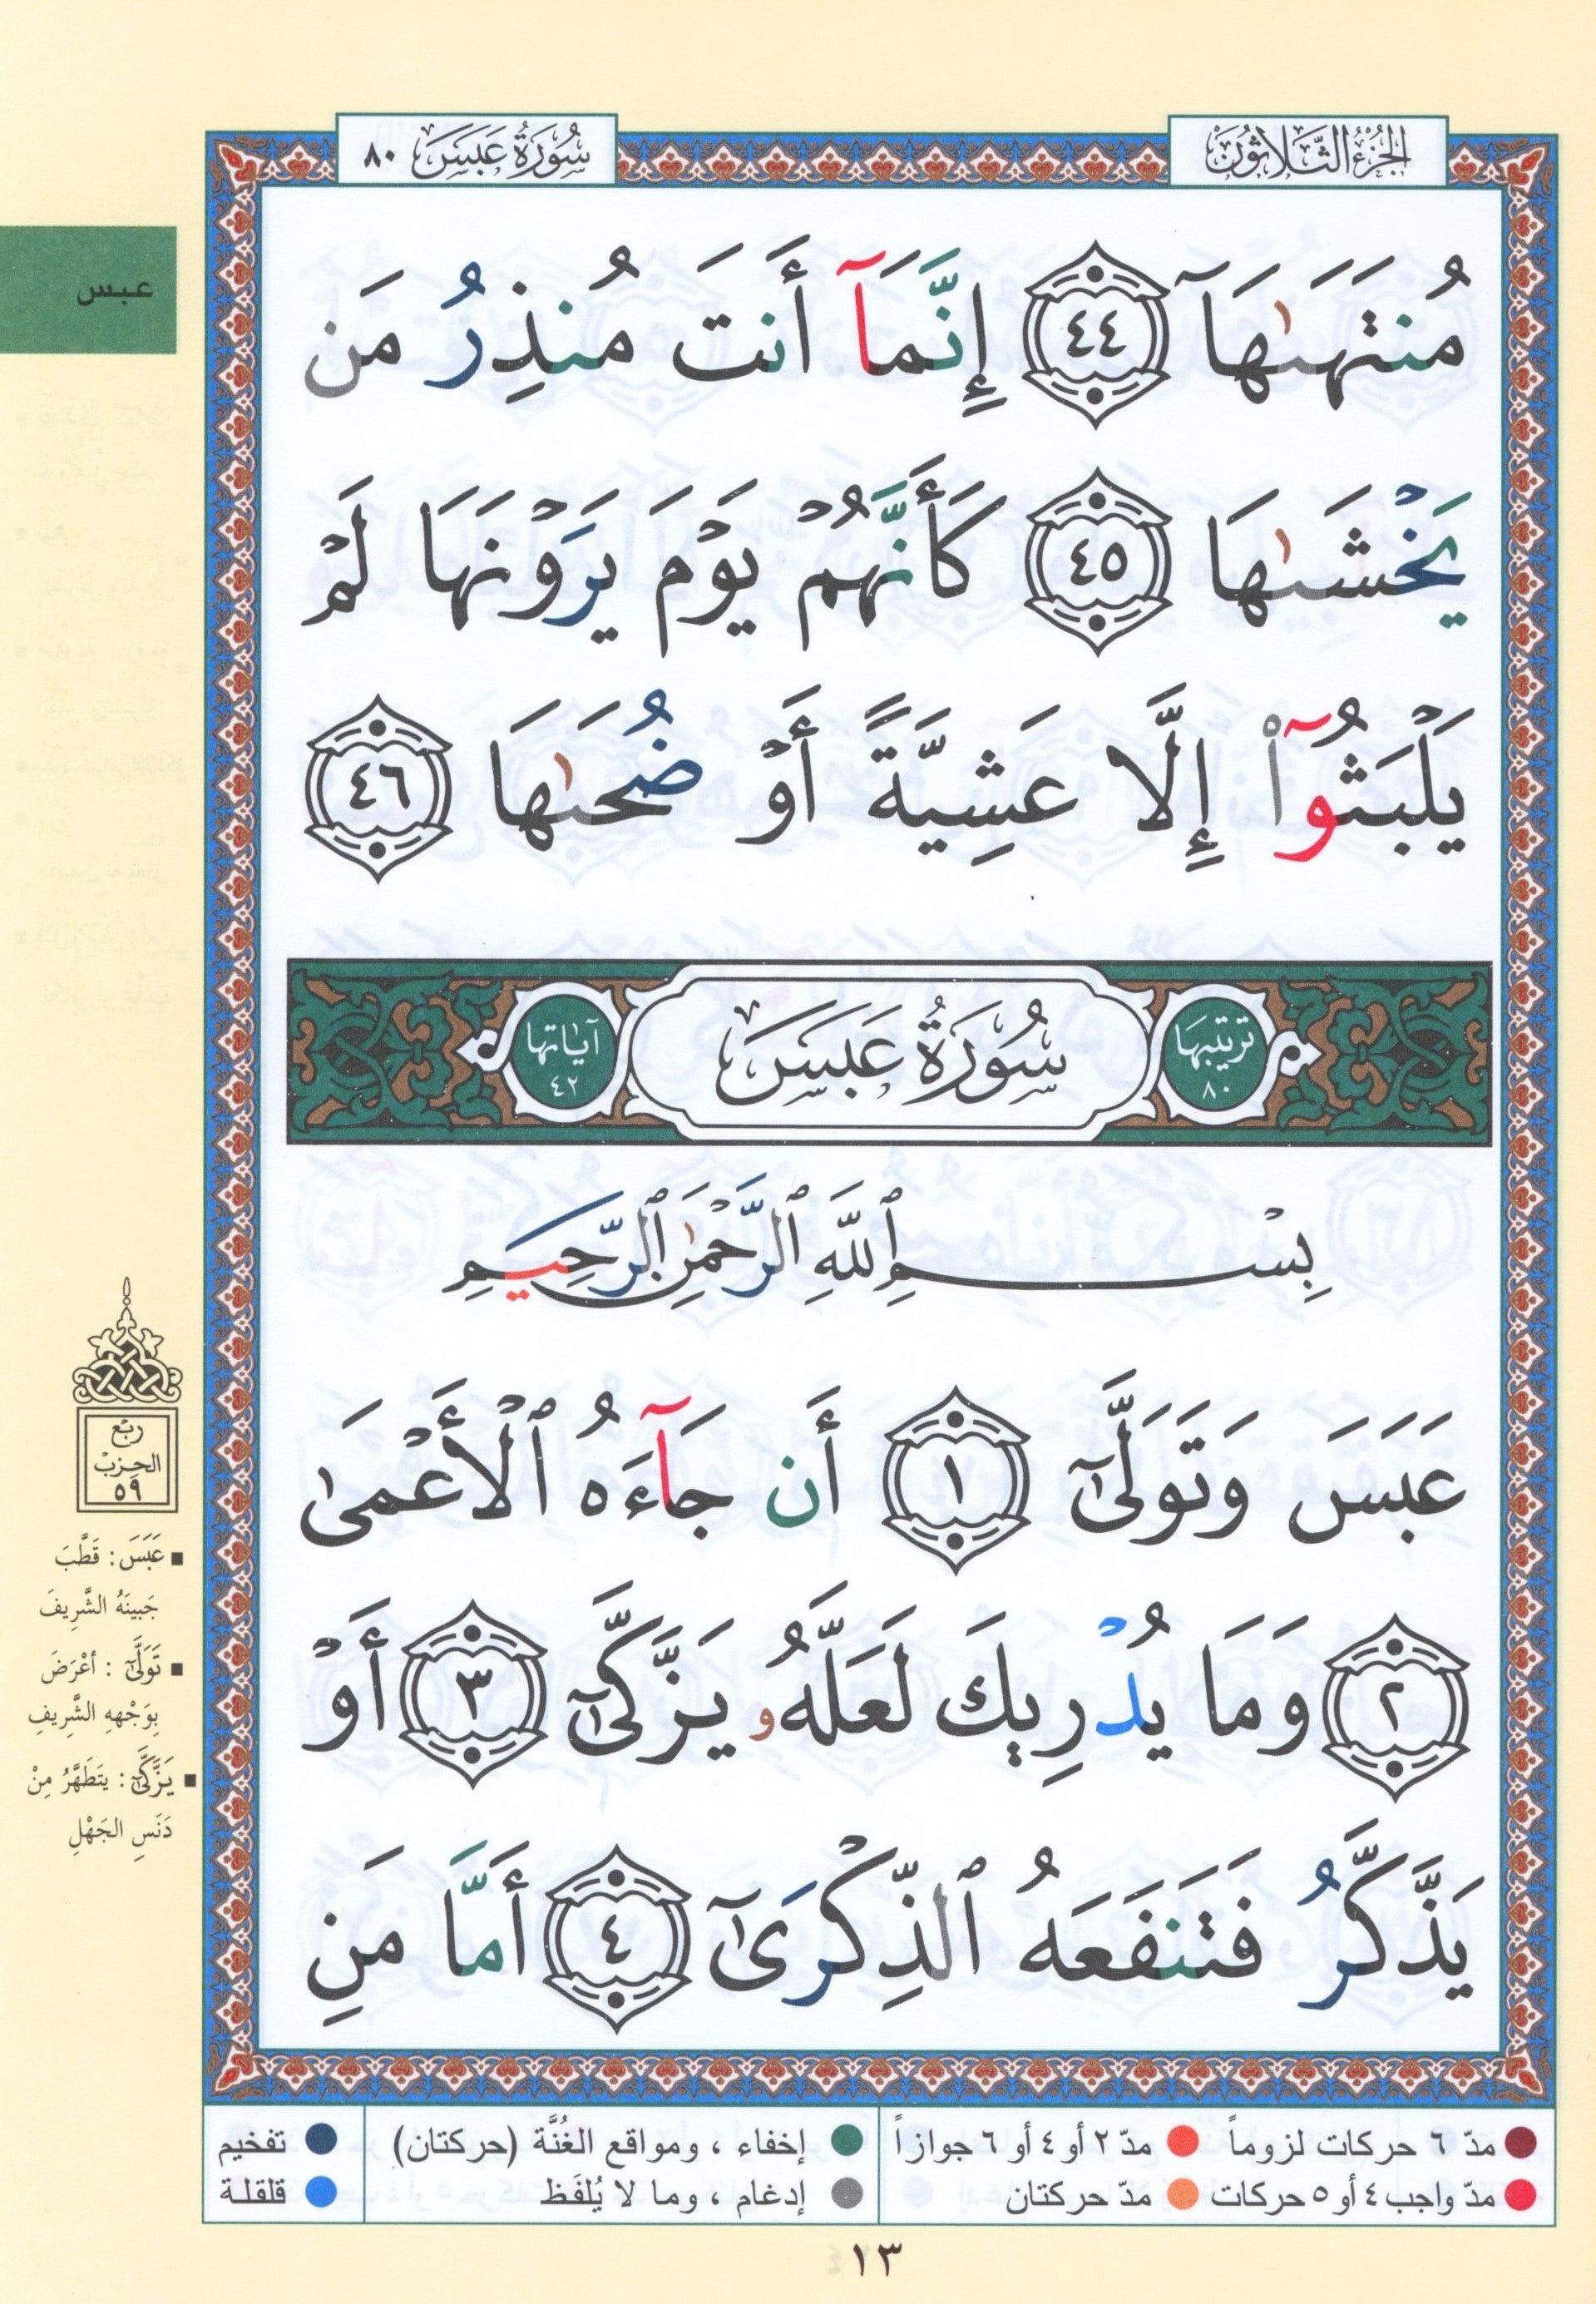 Tajweed Quran Juz' Amma Part 30 in Large Font (7" x 9")